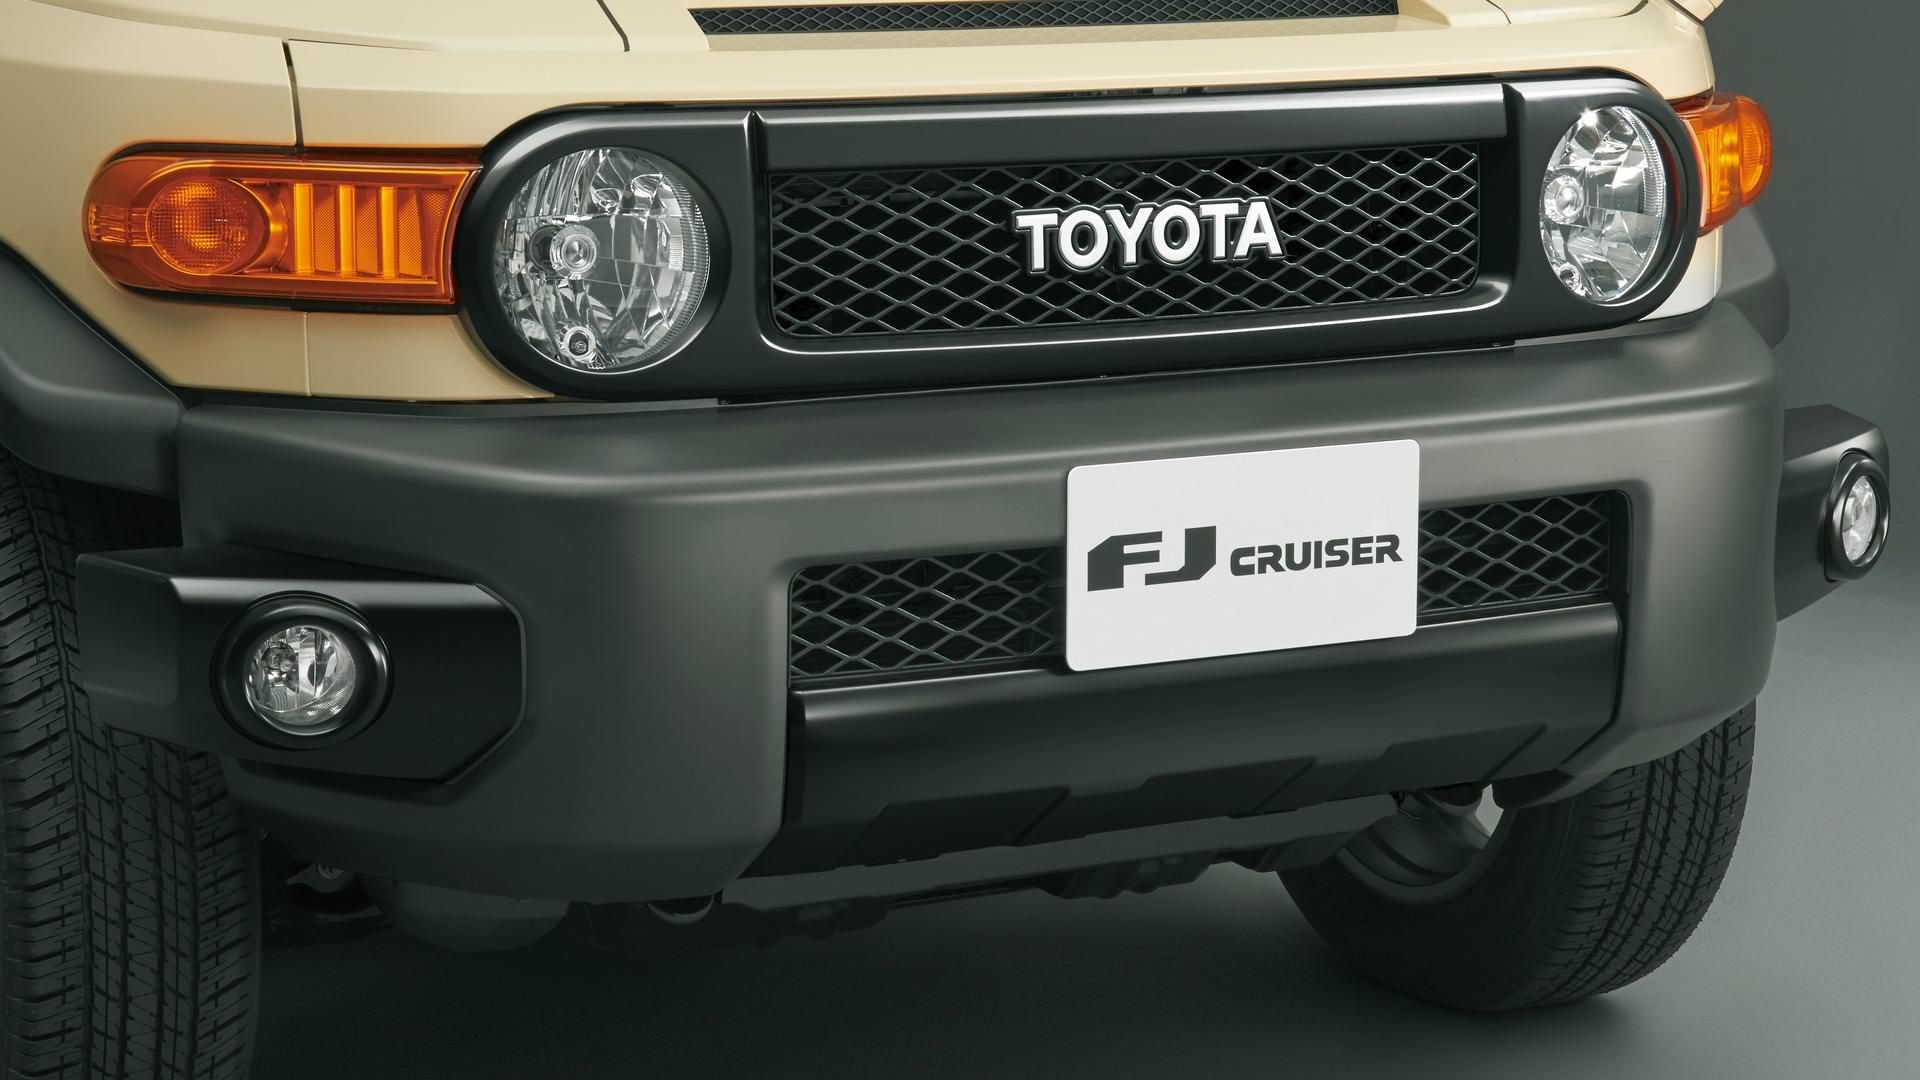 تویوتا اف جی کروزر / Toyota FJ Cruiser